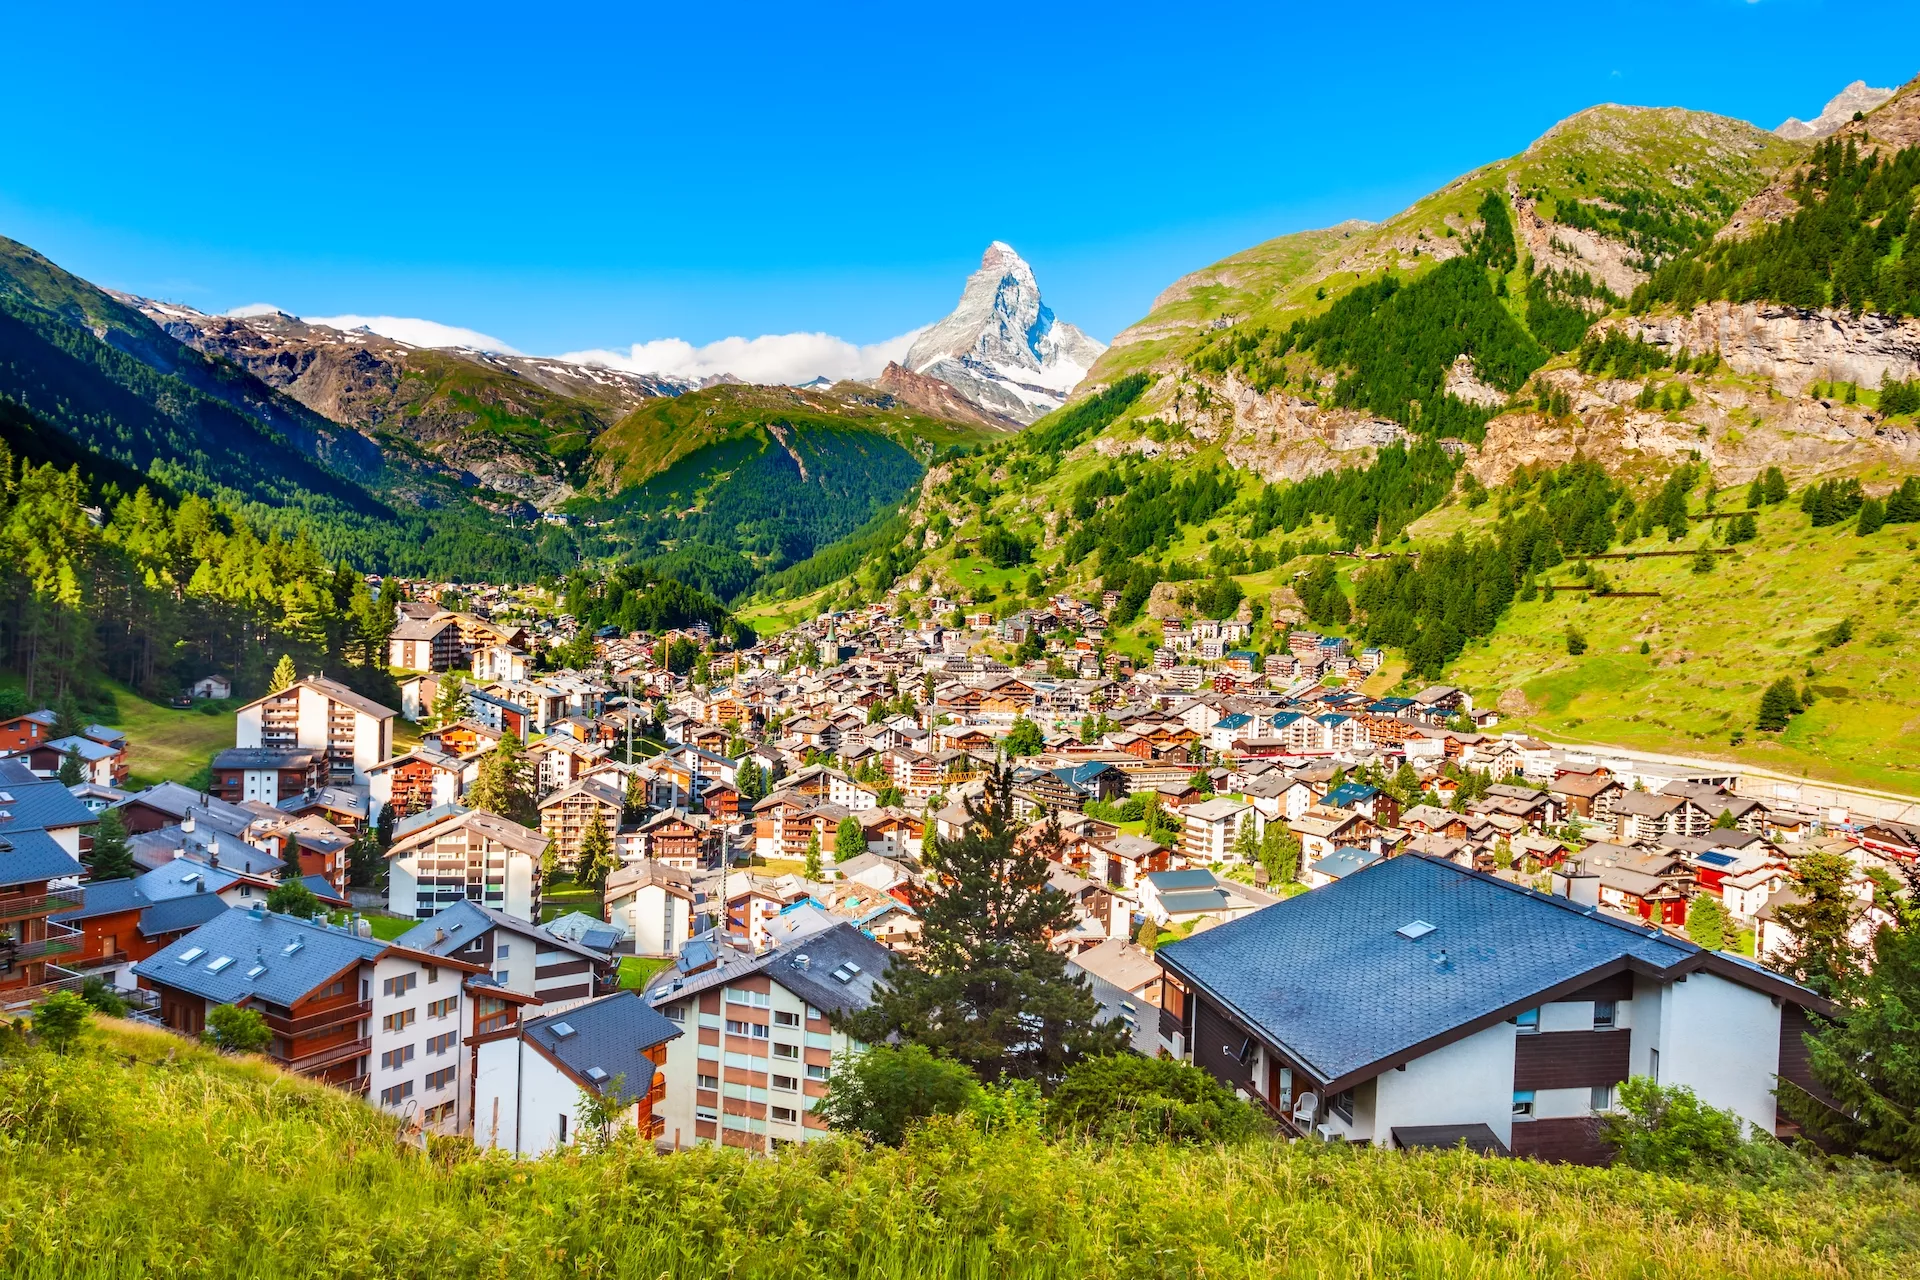 La ciudad de Zermatt y el monte Cervino